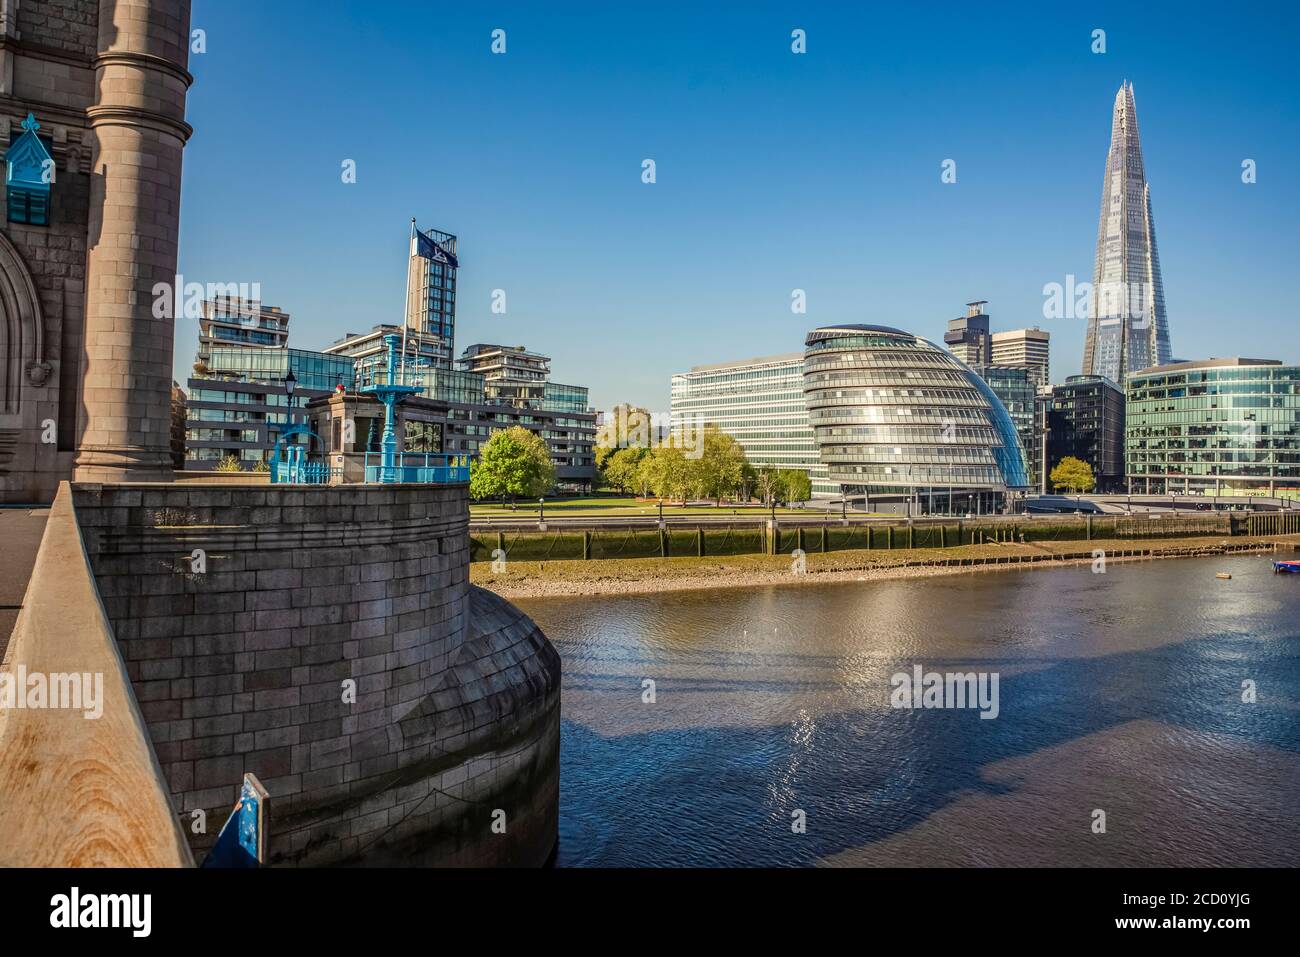 Blick auf London und die Themse von der Tower Bridge im Zentrum von London, während der Hauptverkehrszeit während der nationalen Sperre für Covid-19 Pandemie verlassen Stockfoto